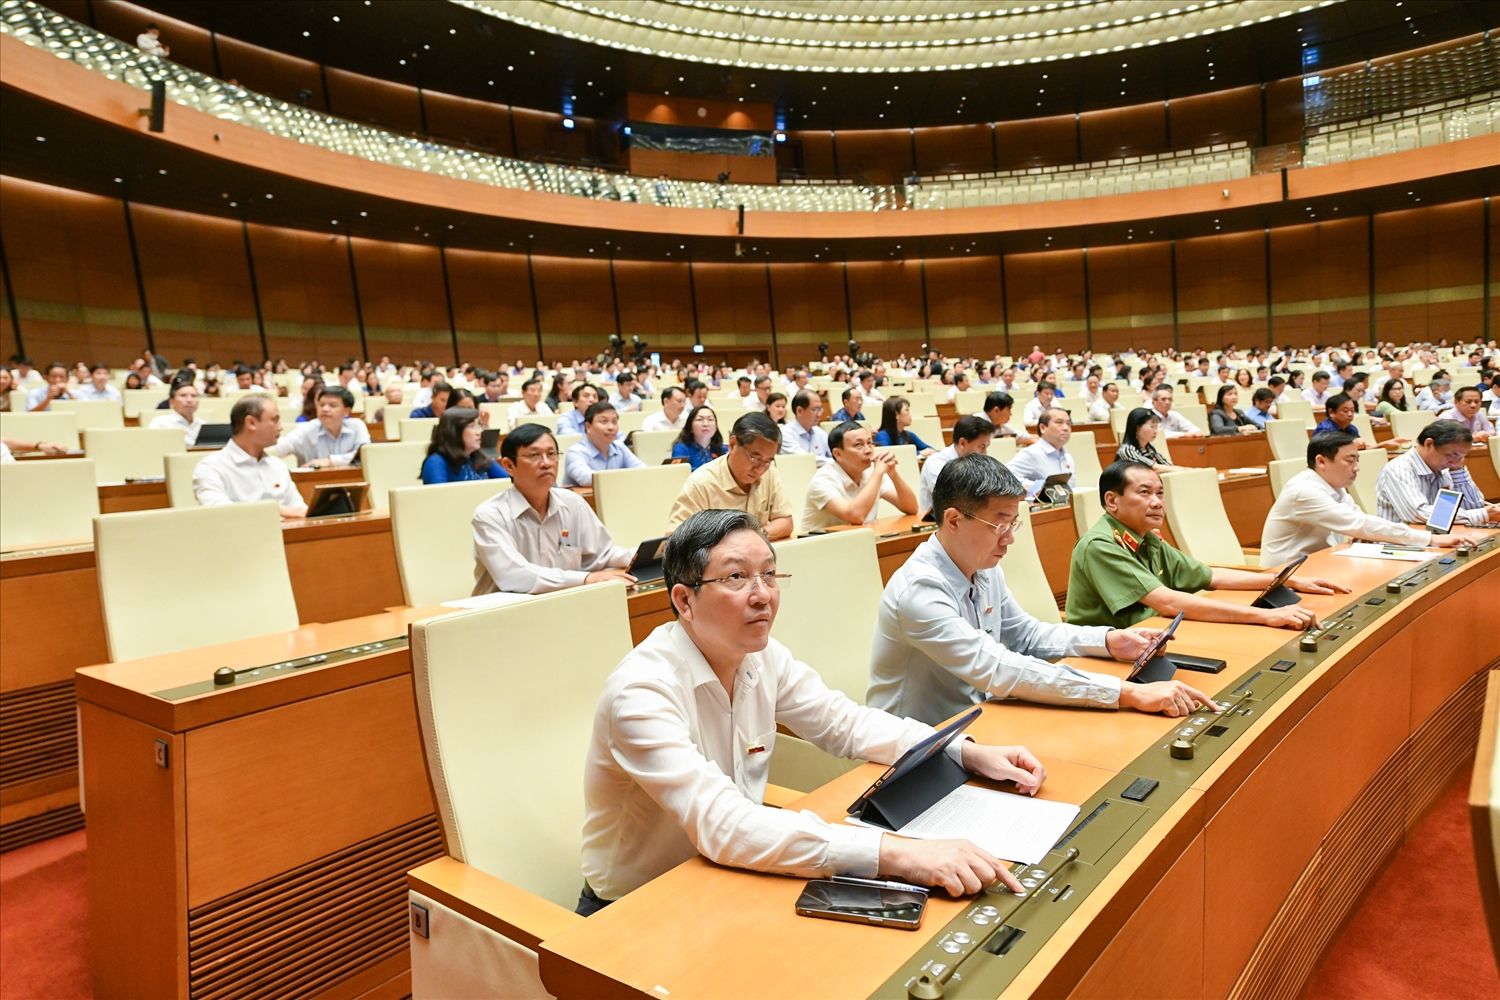 Các vị đại biểu Quốc hội bấm nút biểu quyết thông qua dự thảo Luật Điện ảnh (sửa đổi) tại Phiên họp ngày 15/06